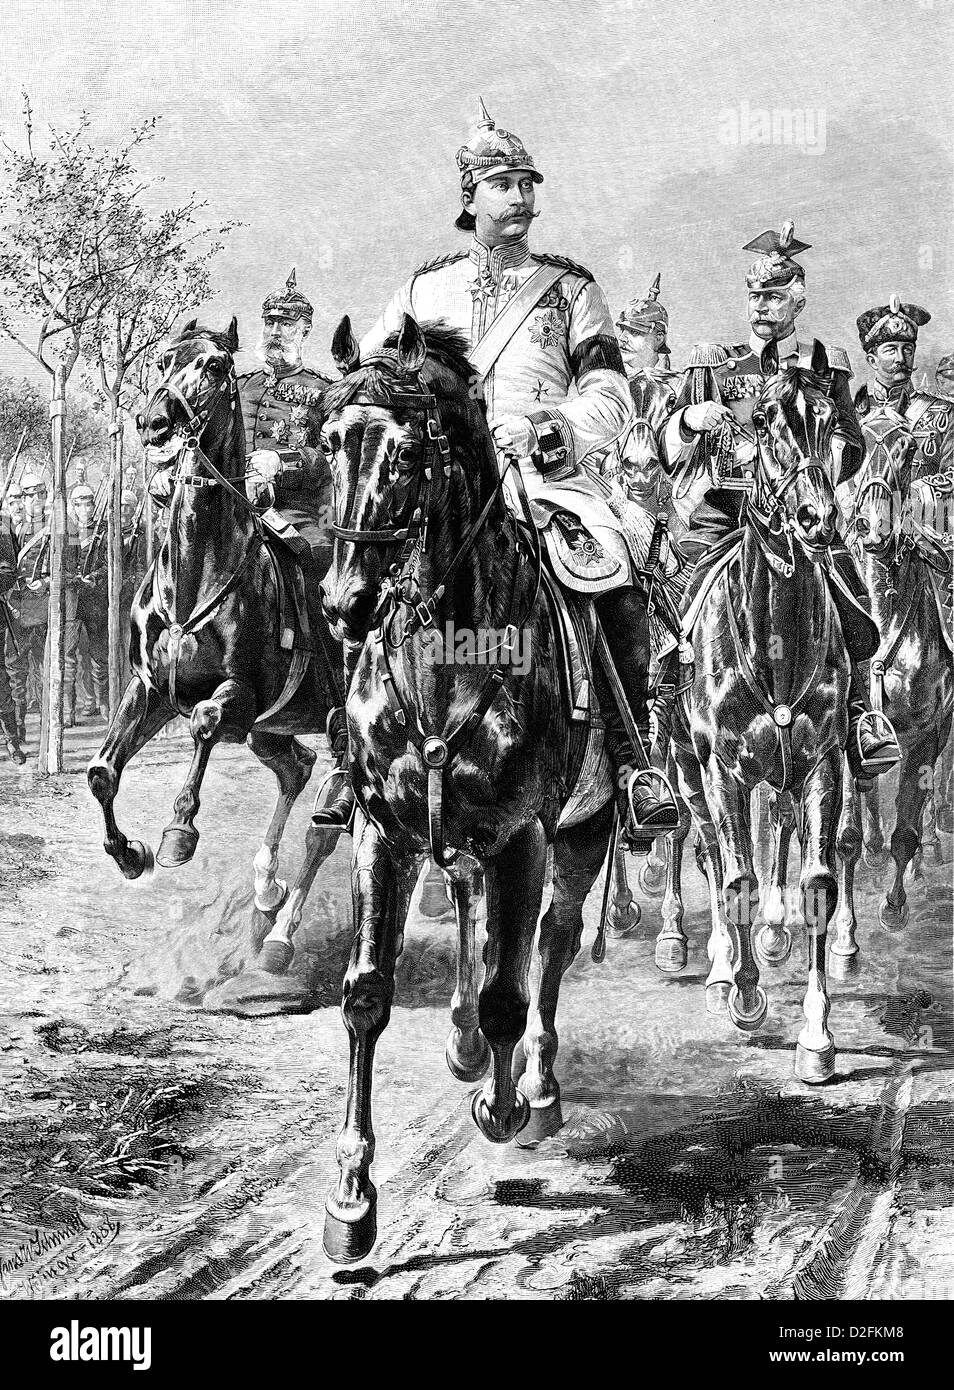 Guillaume II ou Guillaume II, et son entourage à cheval, 1859-1941, l'empereur allemand, roi de Prusse Banque D'Images